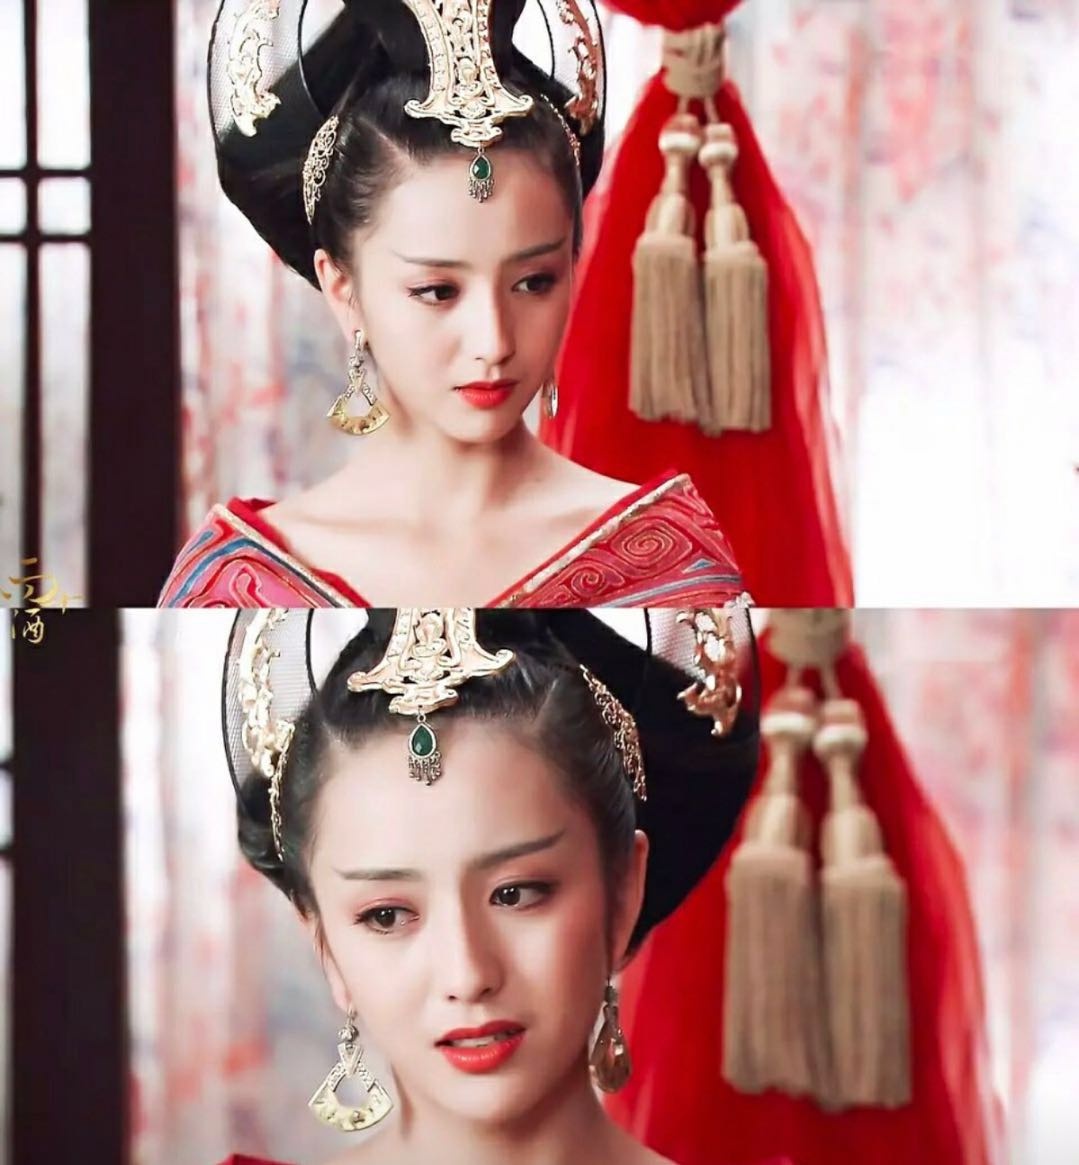 《国家宝藏》中的佟丽娅作为新疆国宝守护人,化身大唐美女,一颦一笑